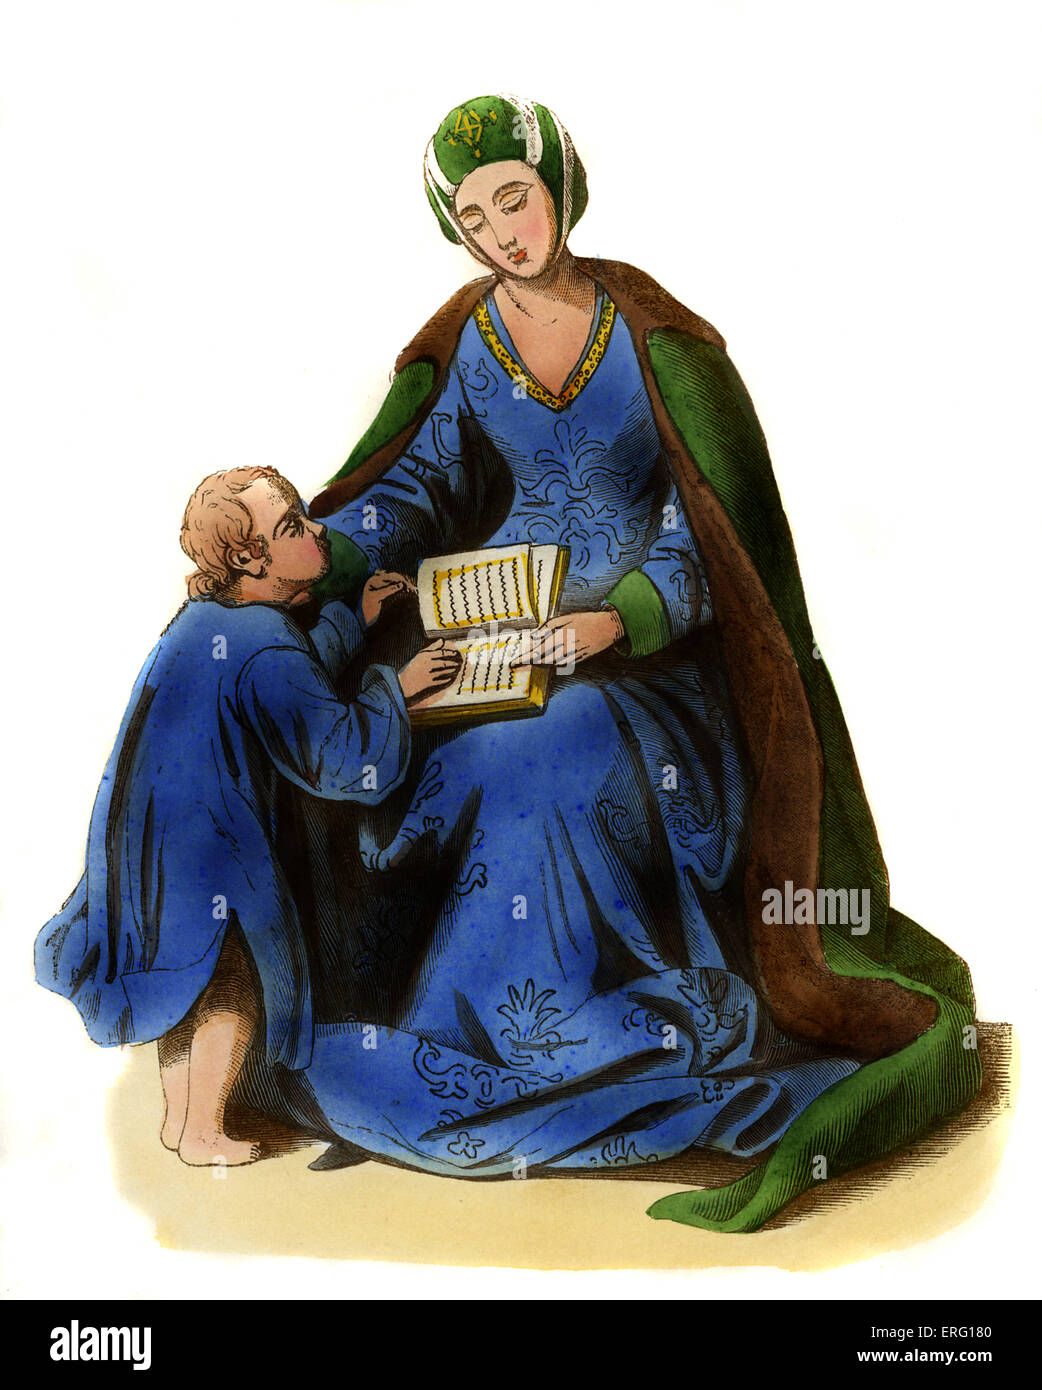 Lady - costume allemand de la deuxième moitié du 15e siècle, que l'on voit assis lecture pour garçon. Elle porte un brodé bleu Banque D'Images